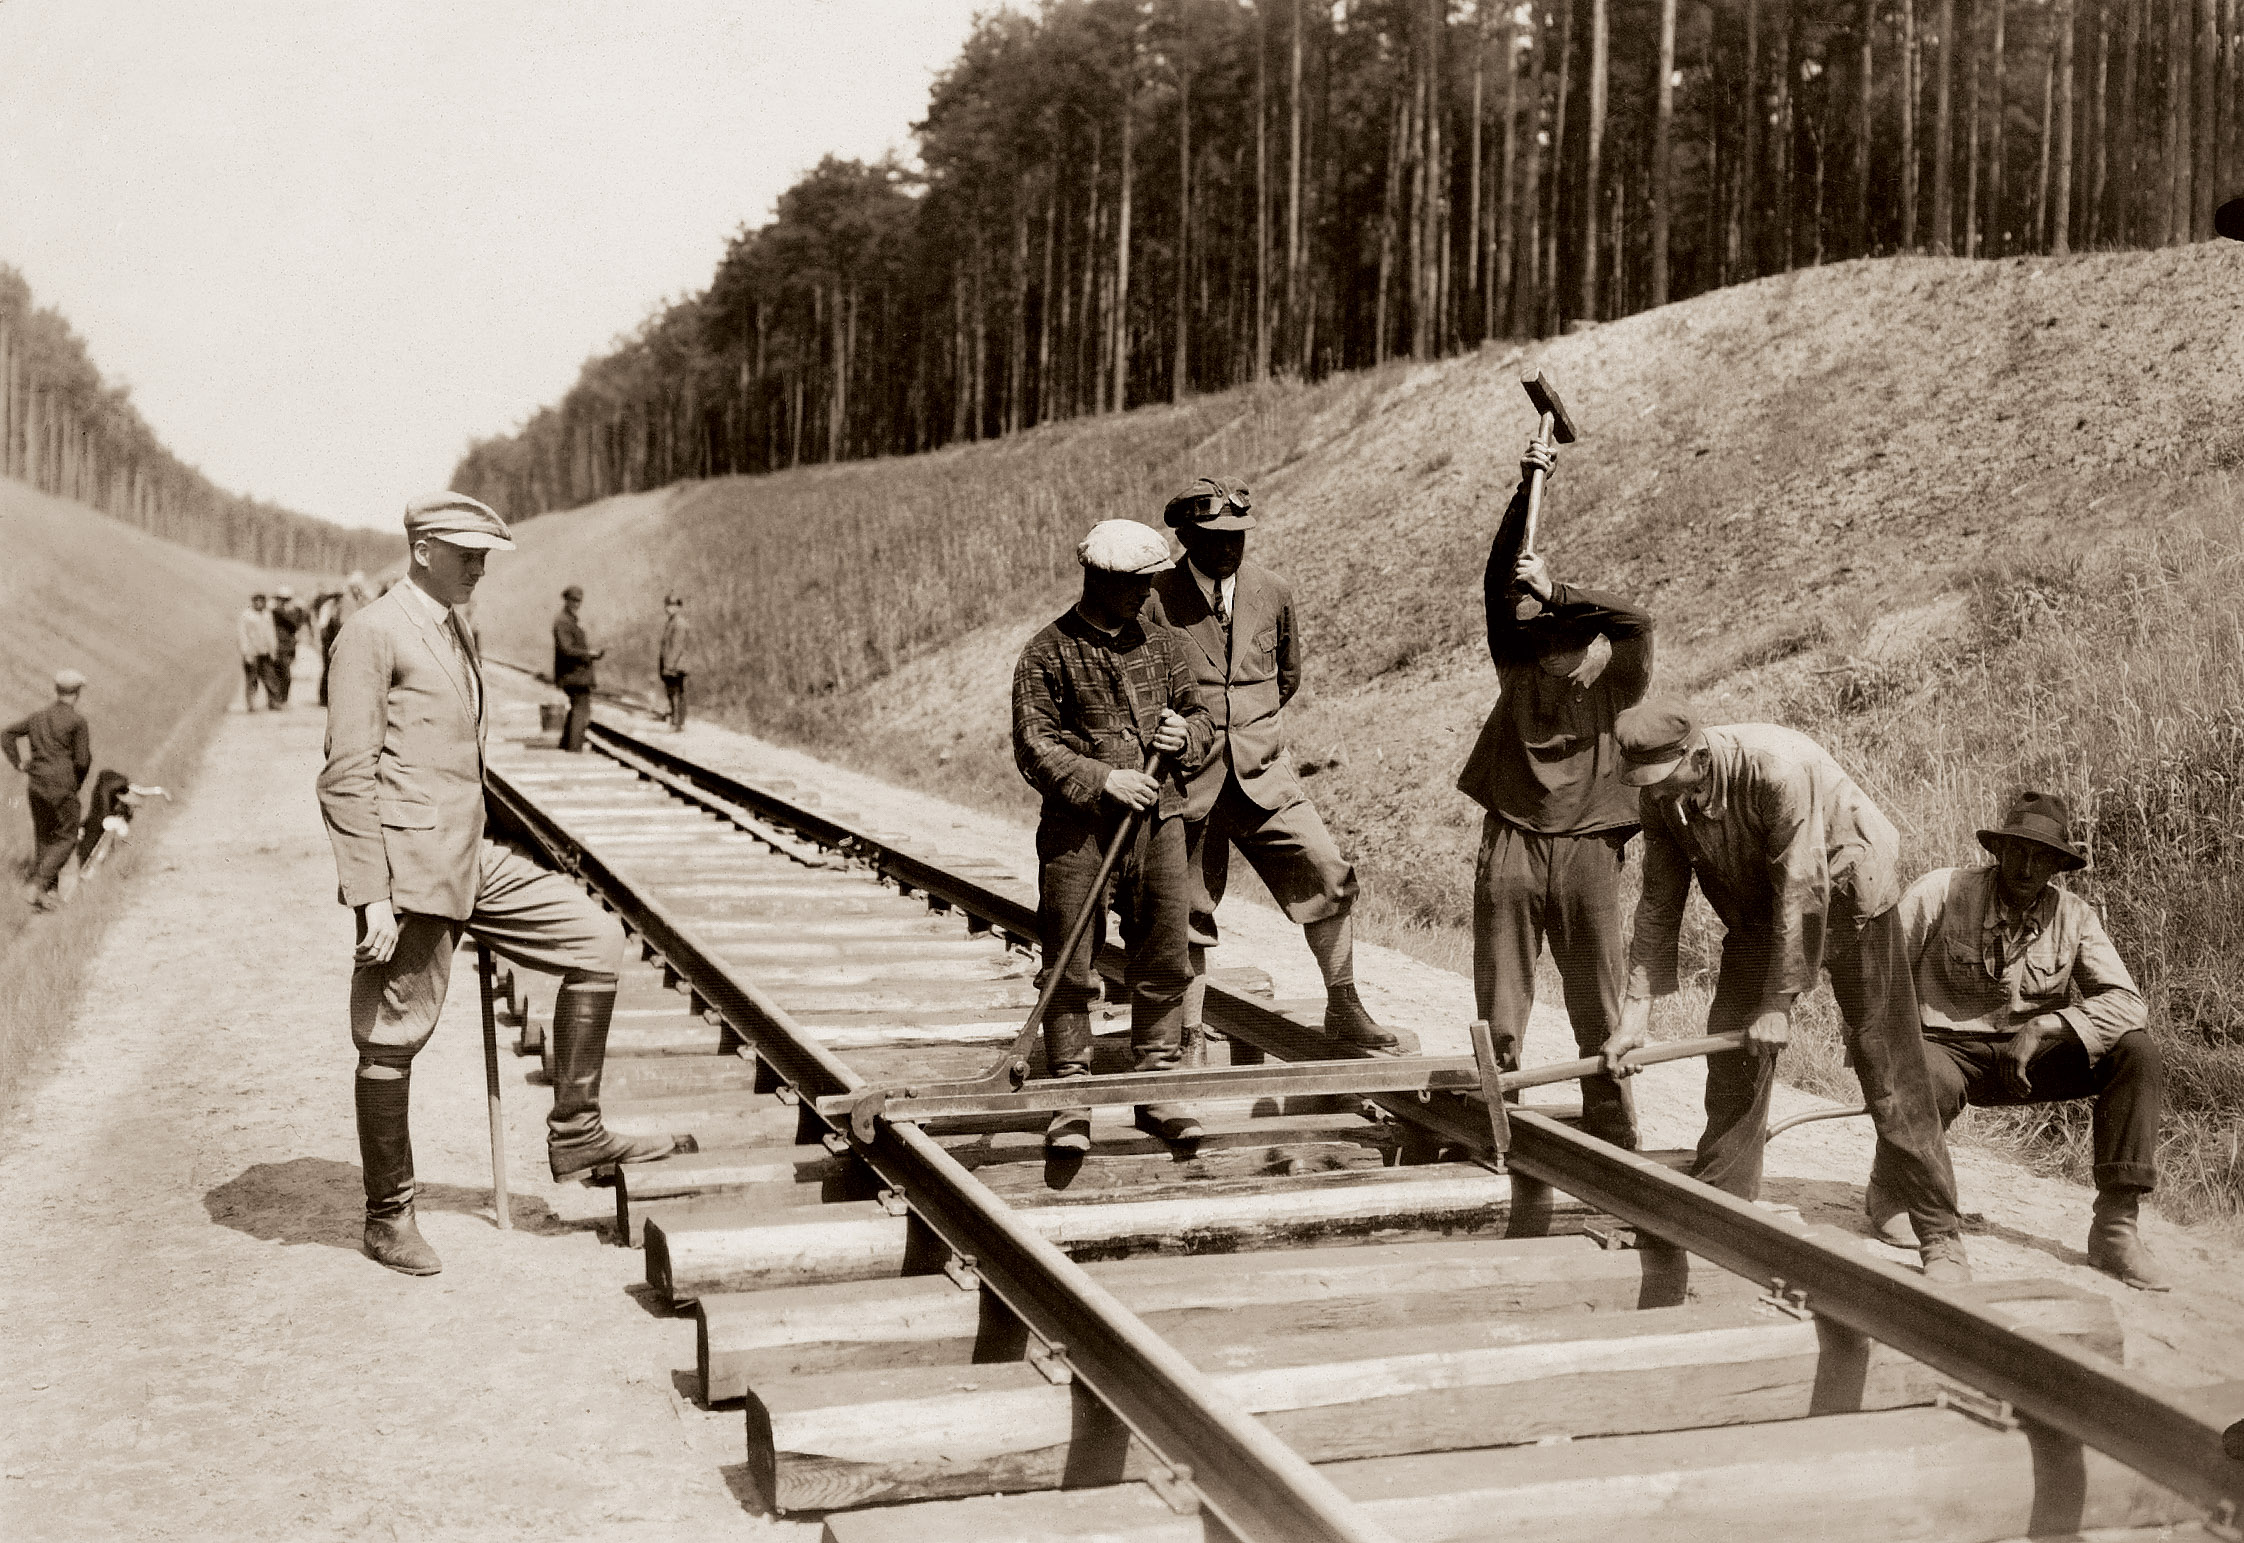 Budowa magistrali węglowej była jedną z głównych inwestycji kolejowych okresu międzywojennego w Polsce / The construction of the coal mine was one of the main railway investments in Poland in the interwar period